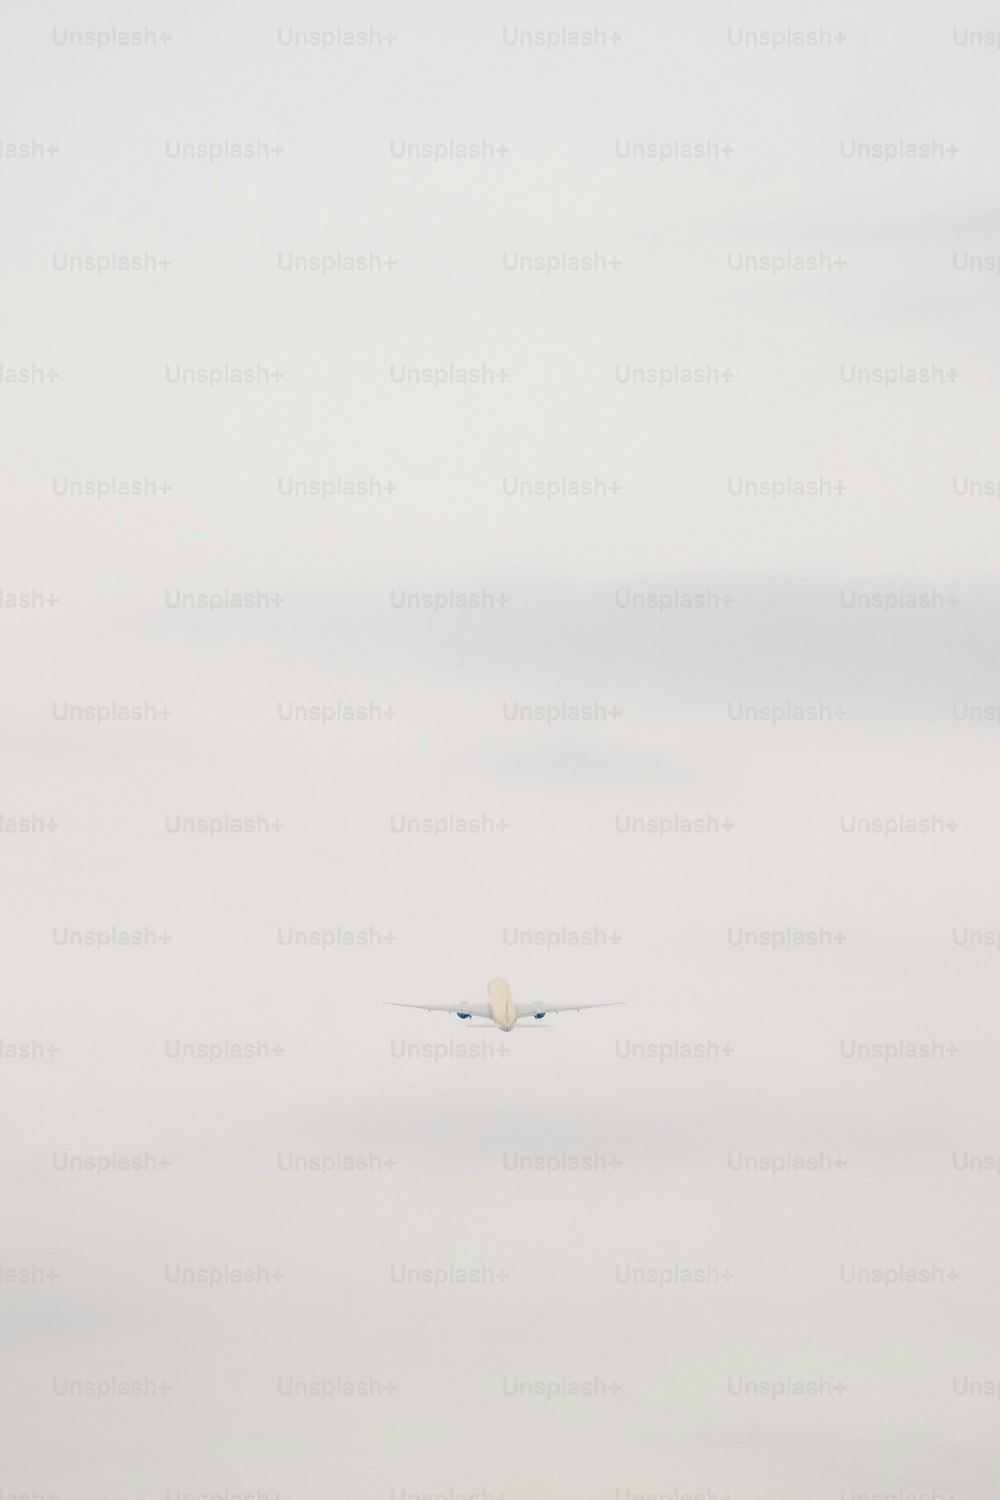 Un avion volant dans le ciel avec un nuage en arrière-plan